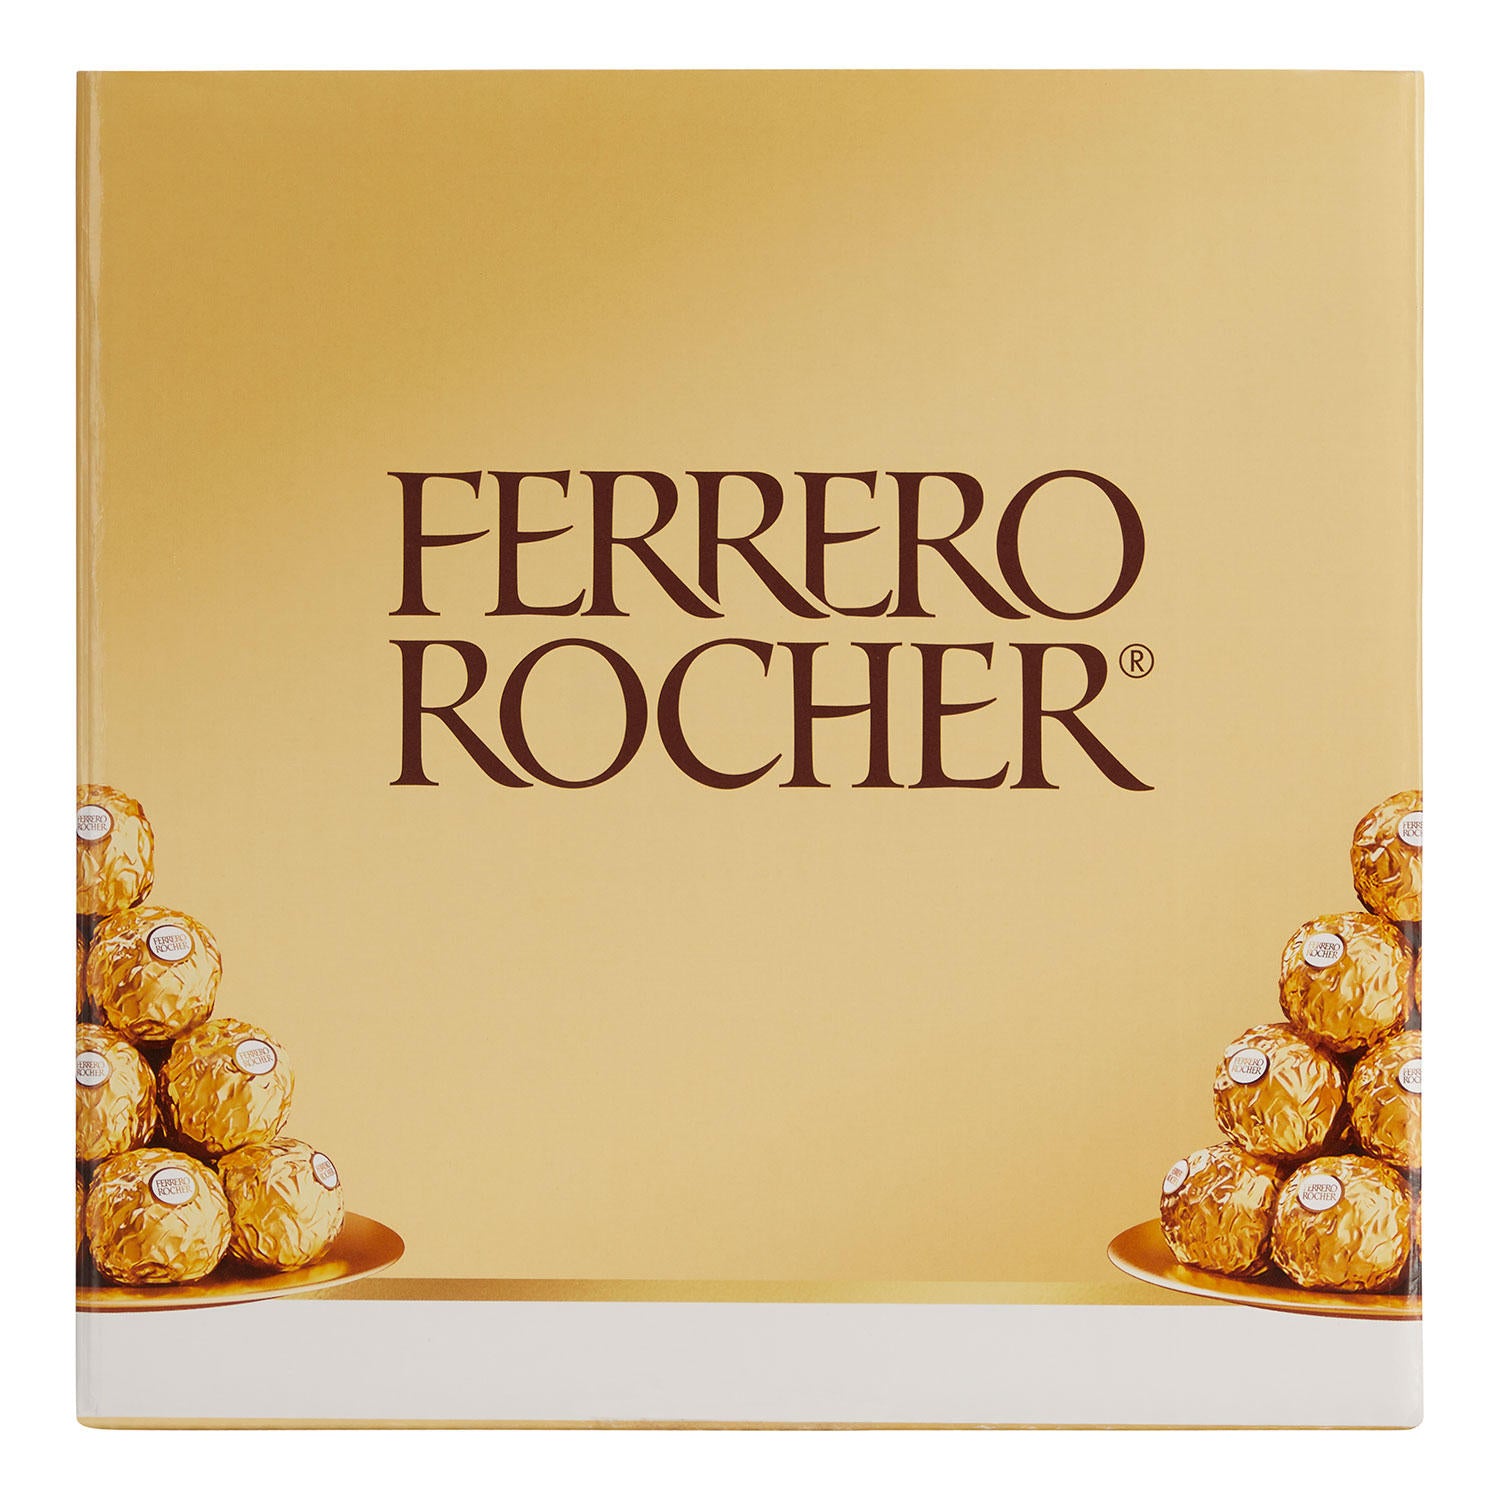 Ferrero Rocher Fine Hazelnut Chocolate, 12 × 38 g